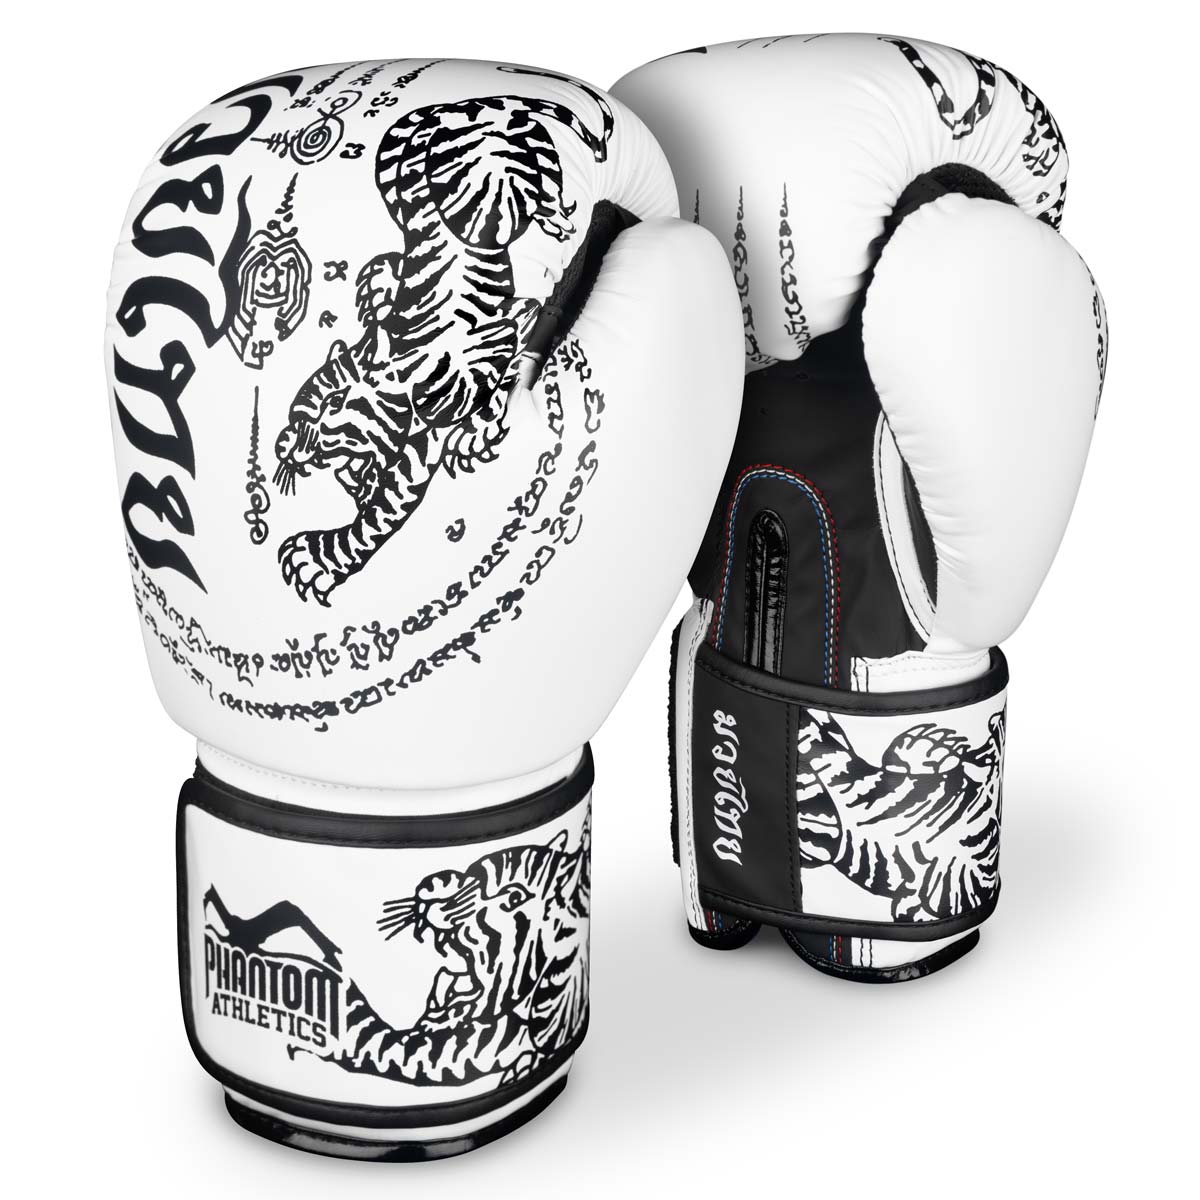 Phantom Muay Thai bokserske rukavice sa tajlandskim printom u bijelo/crnoj boji.